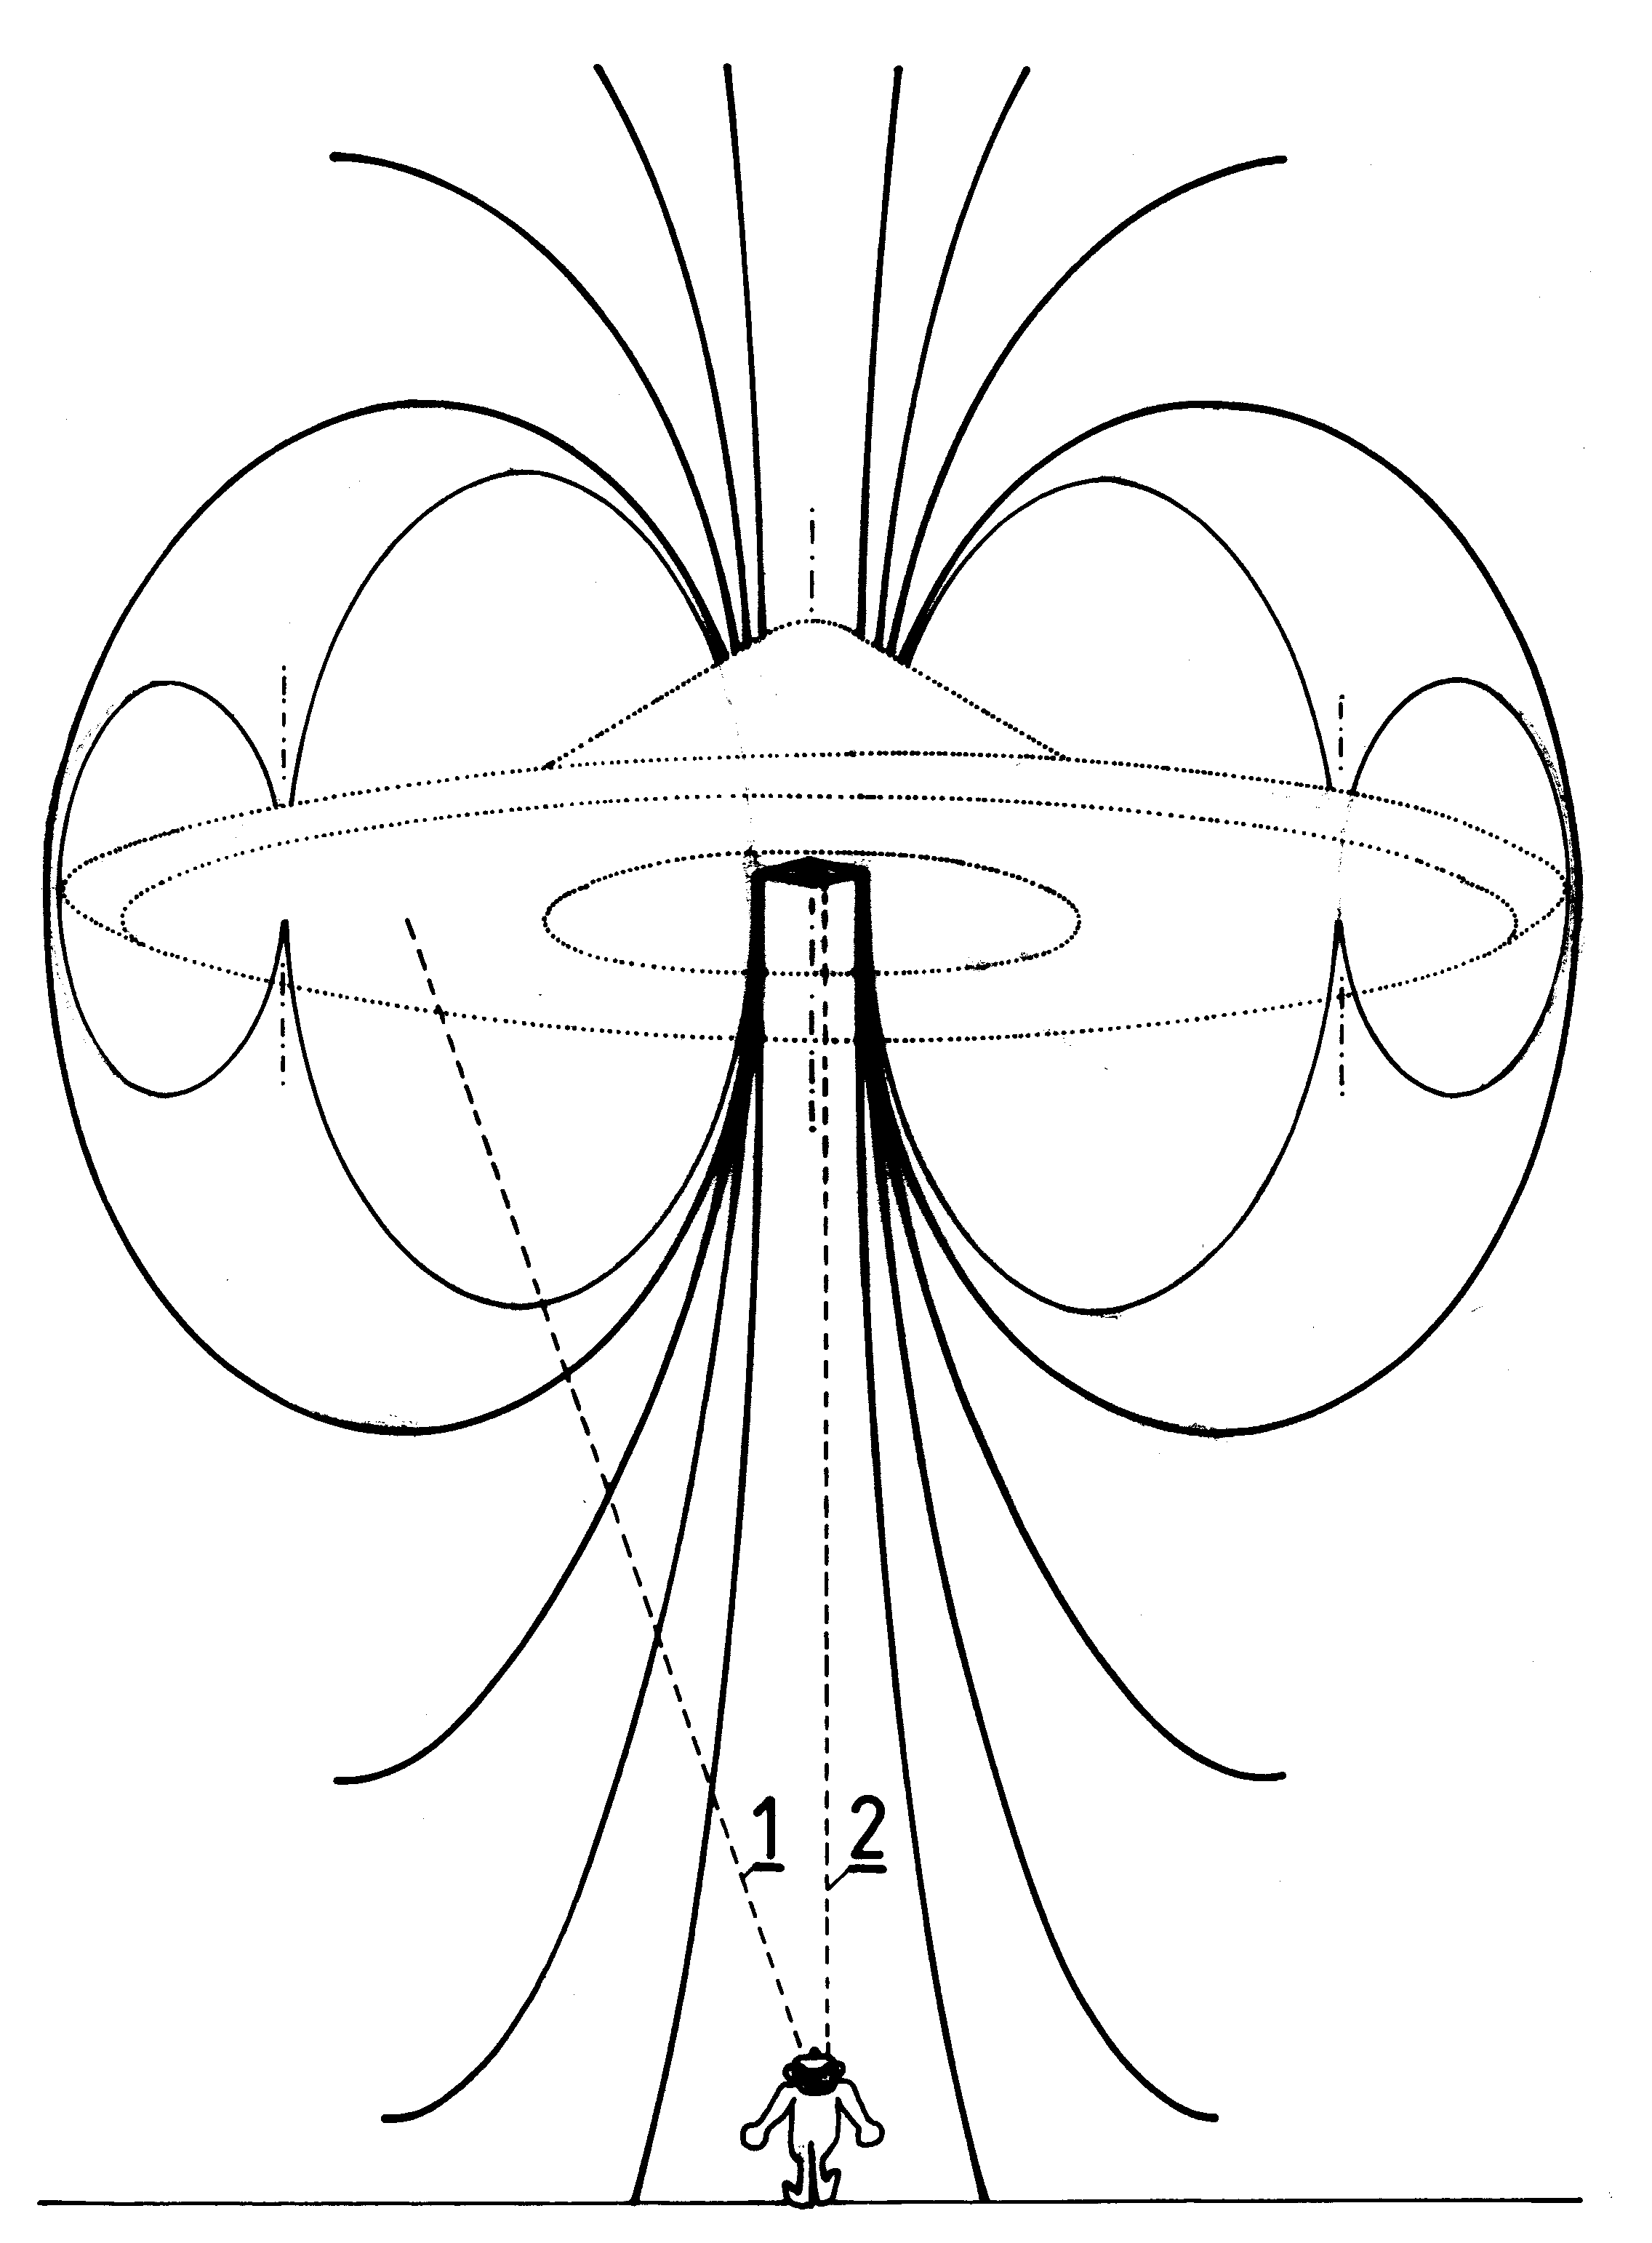 Fig./Rys. S8(dу≥-srodek) in/w [1/4]